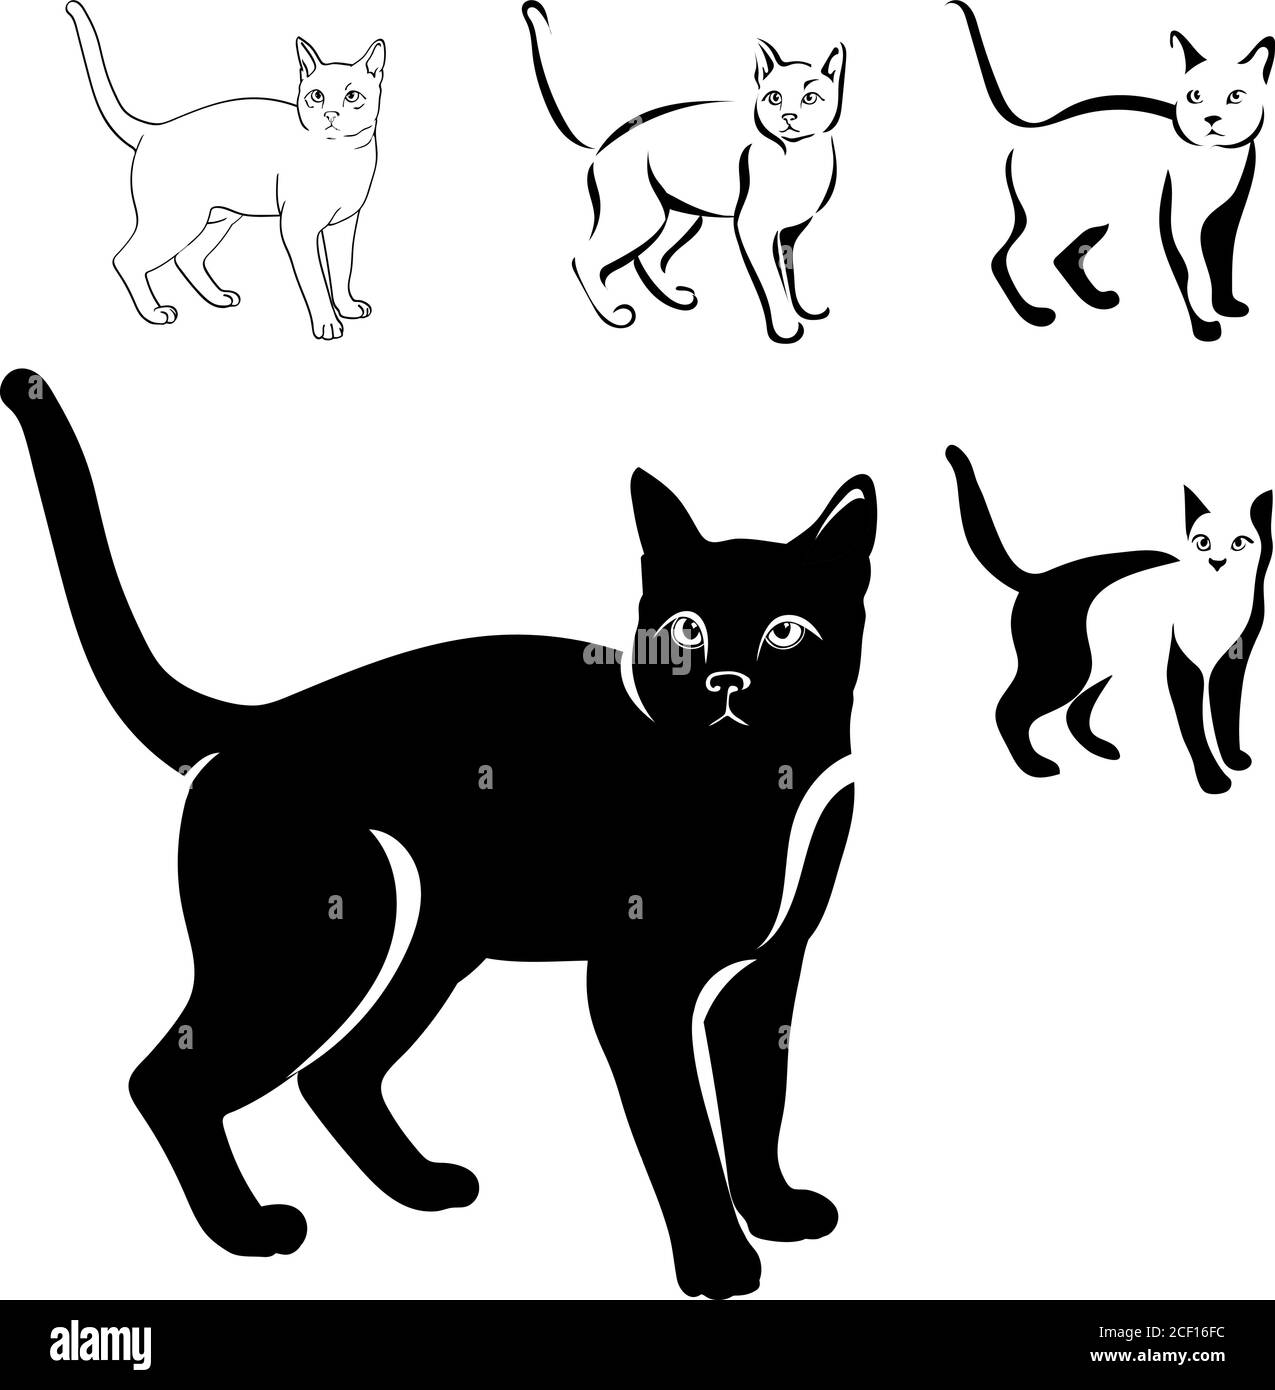 Katzen schwarzes Bild in verschiedenen Positionen, Katze sitzend, liegend, gehend, spielend, Vektor, schwarz, isoliert, weiß, gesetzt, Hintergrund, Umriss, Tier Stock Vektor